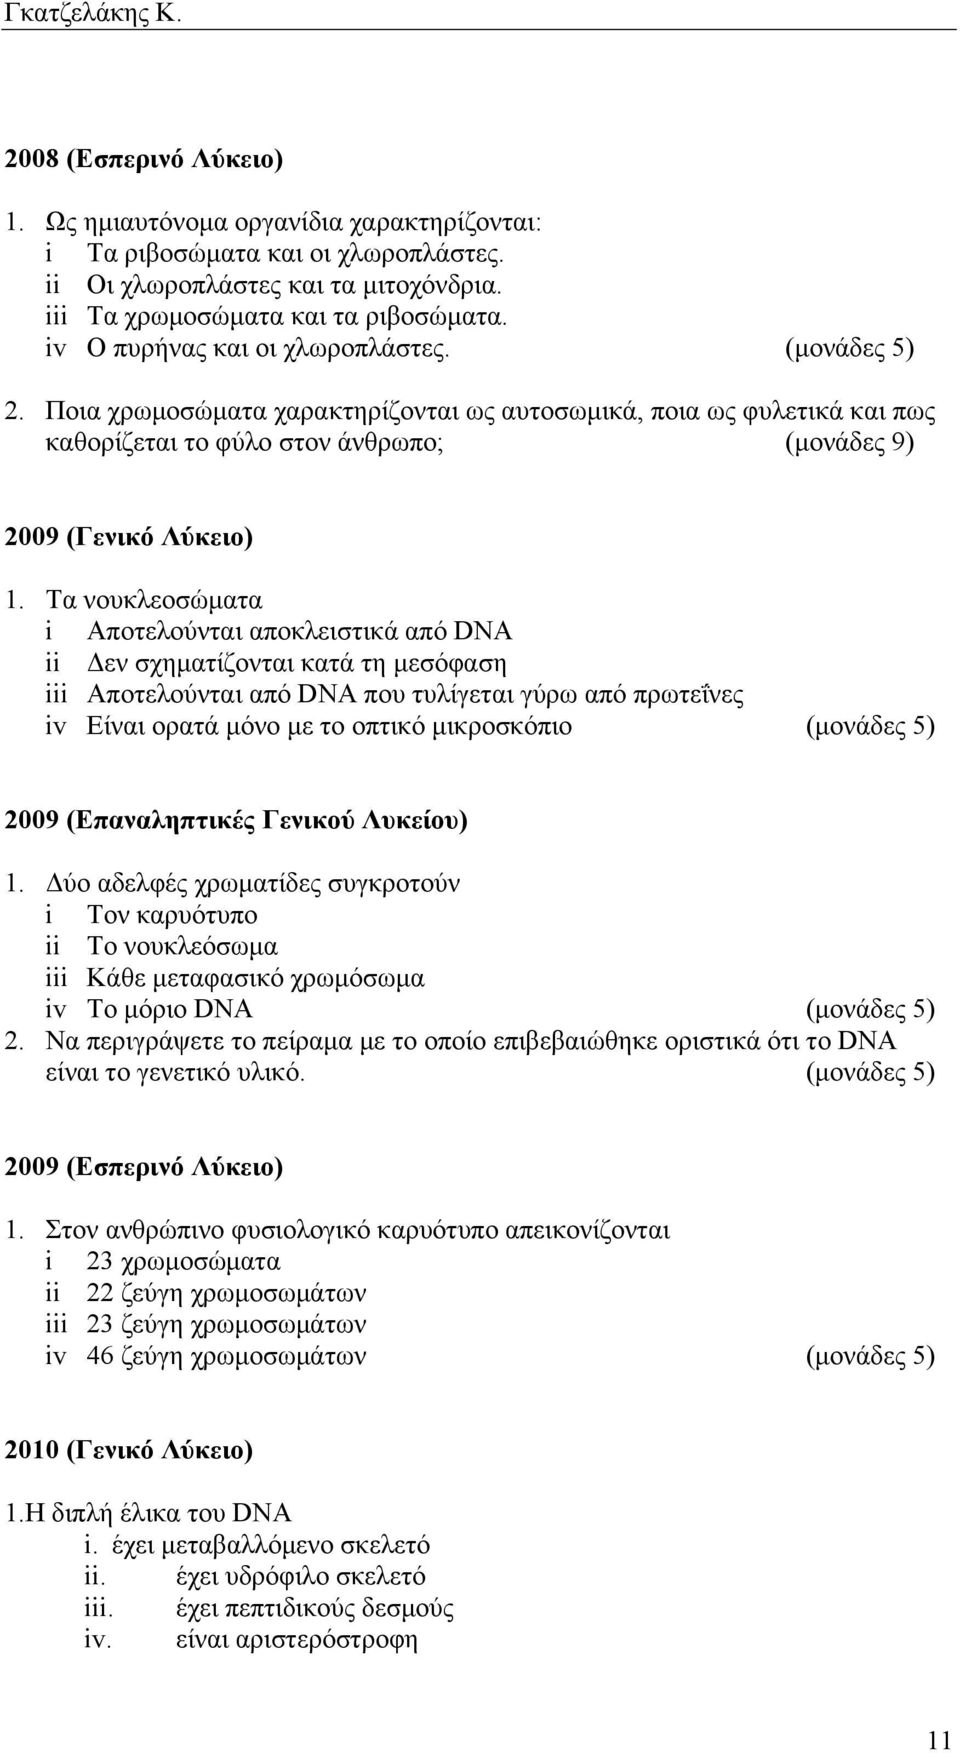 Τα νουκλεοσώµατα i Αποτελούνται αποκλειστικά από DNA ii Δεν σχηµατίζονται κατά τη µεσόφαση iii Αποτελούνται από DNA που τυλίγεται γύρω από πρωτεΐνες iv Είναι ορατά µόνο µε το οπτικό µικροσκόπιο